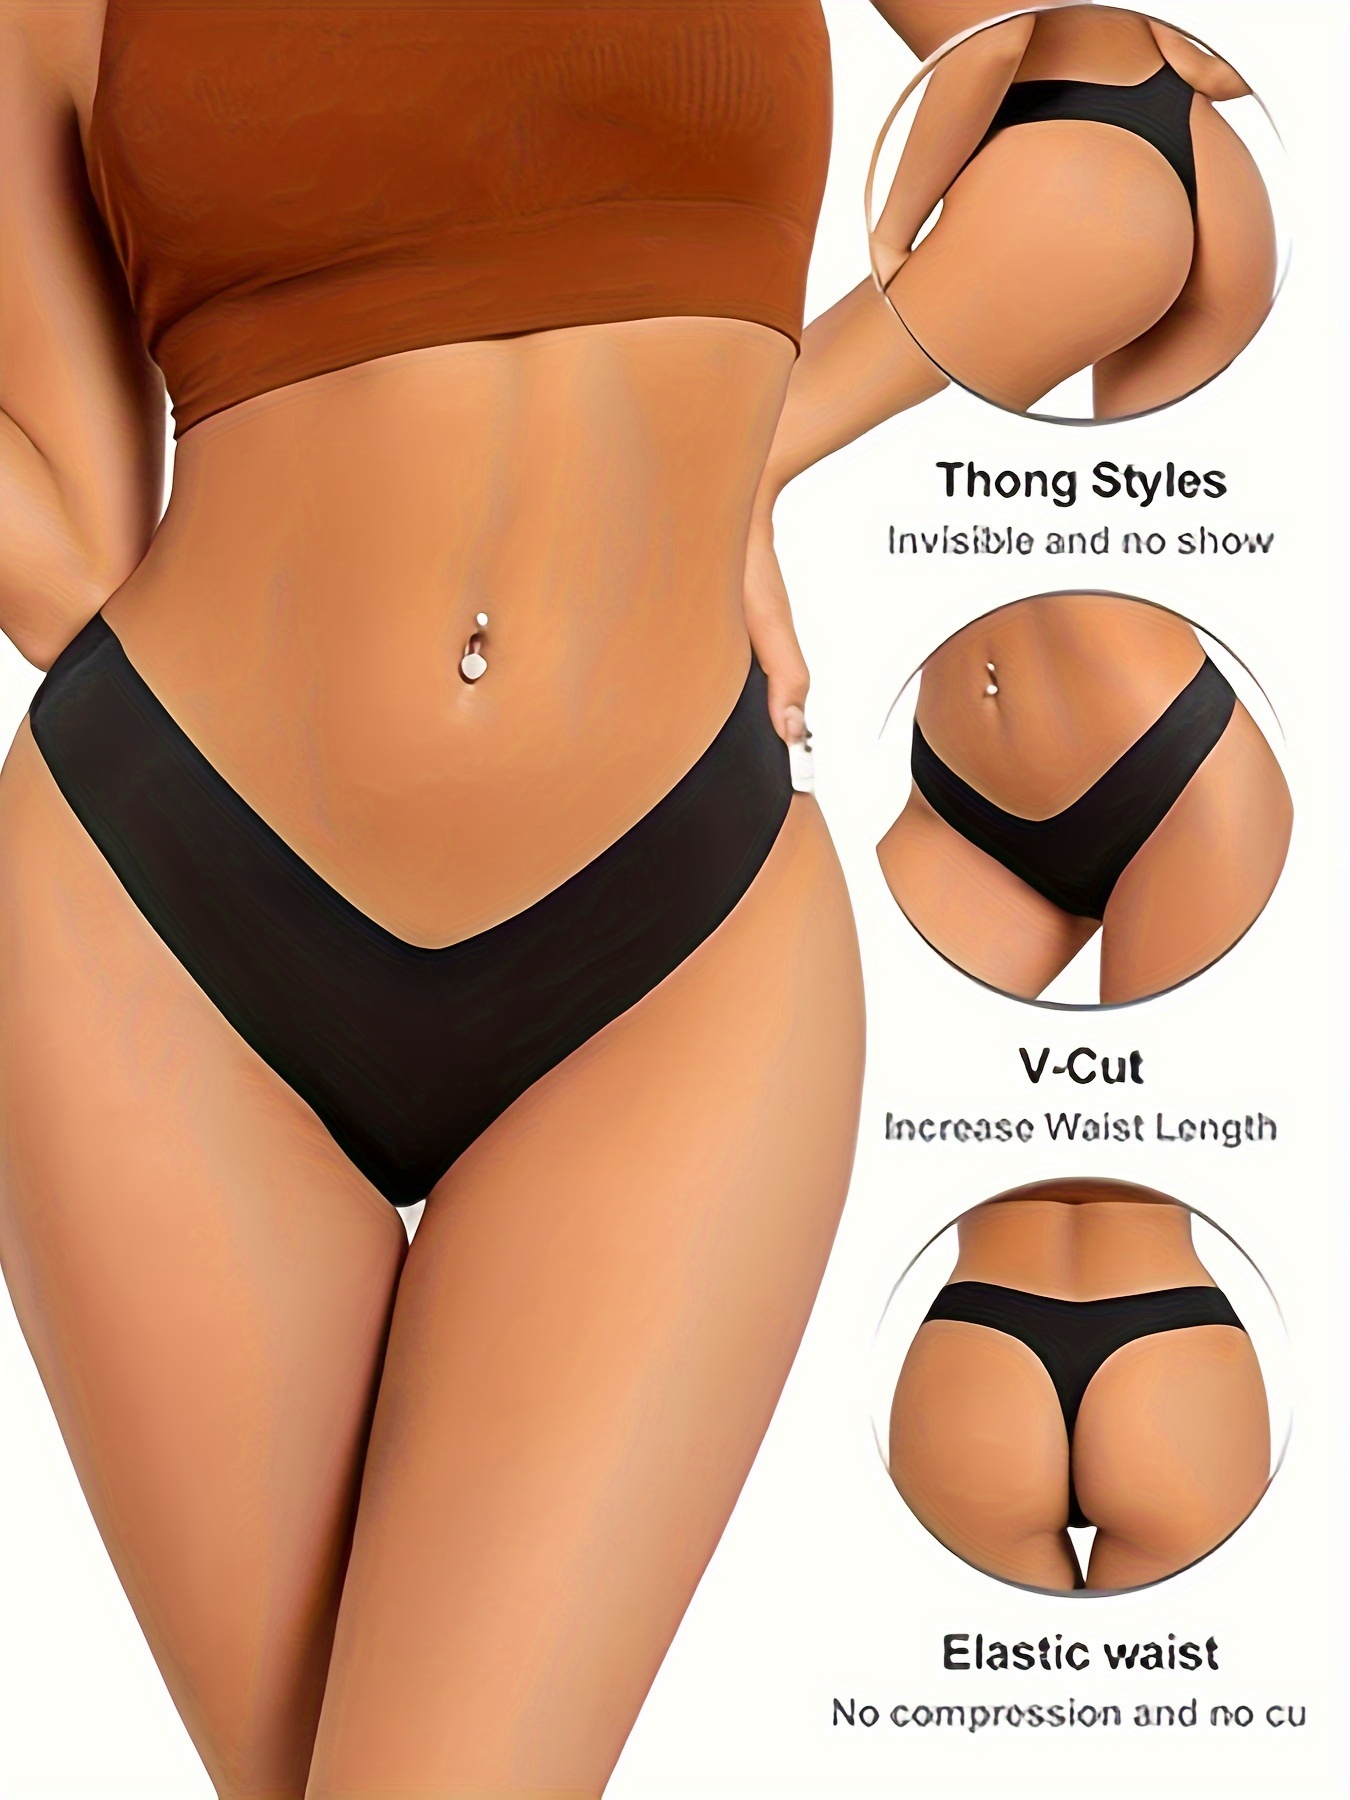 V-cut invisible thong